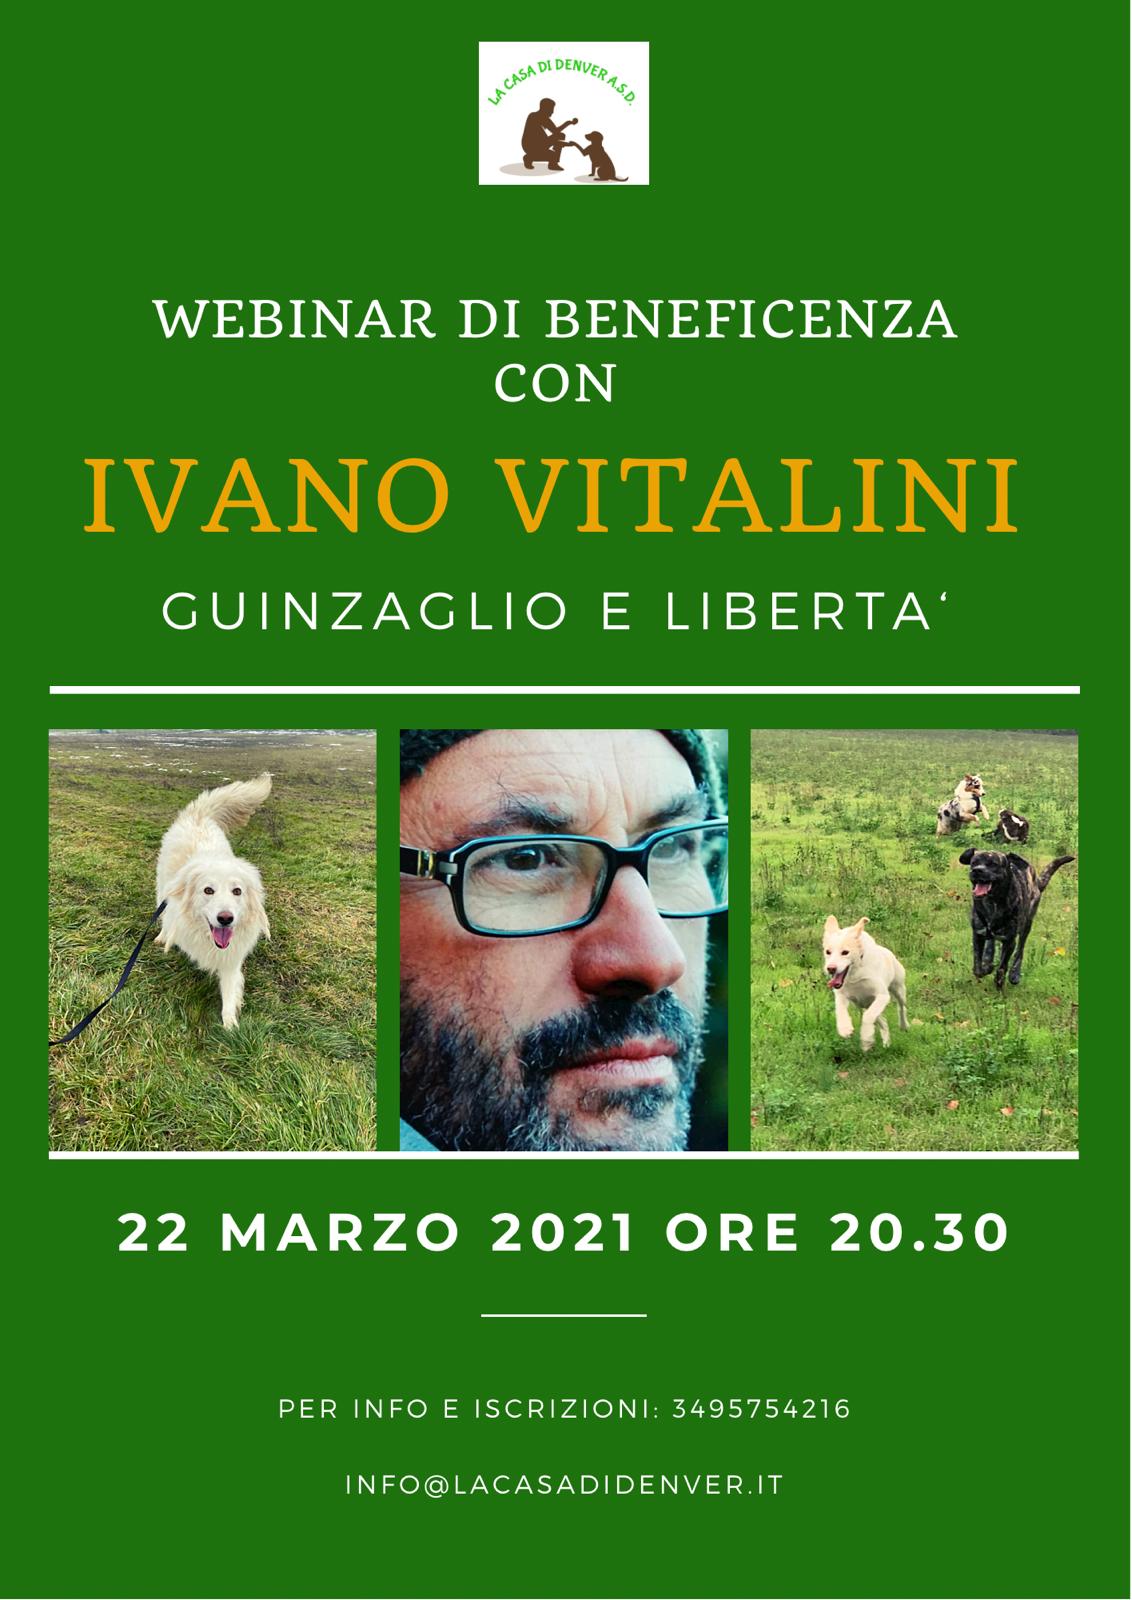 Webinar 22 Marzo 2021 - Guinzaglio e libertà con Ivano Vitalini